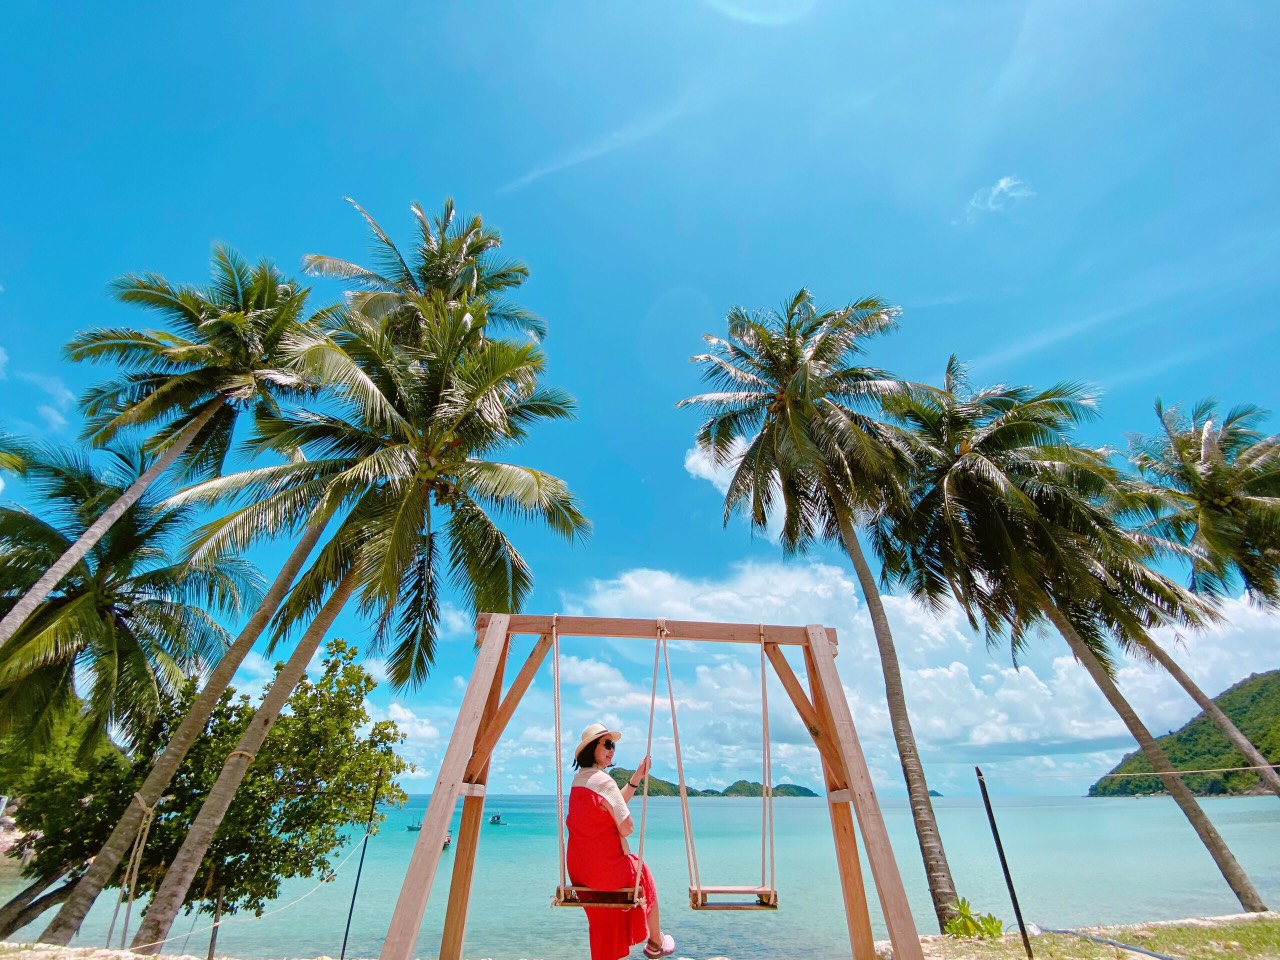 31 Nhà nghỉ, khách sạn, resort homestay Nam Du giá rẻ, view biển đẹp